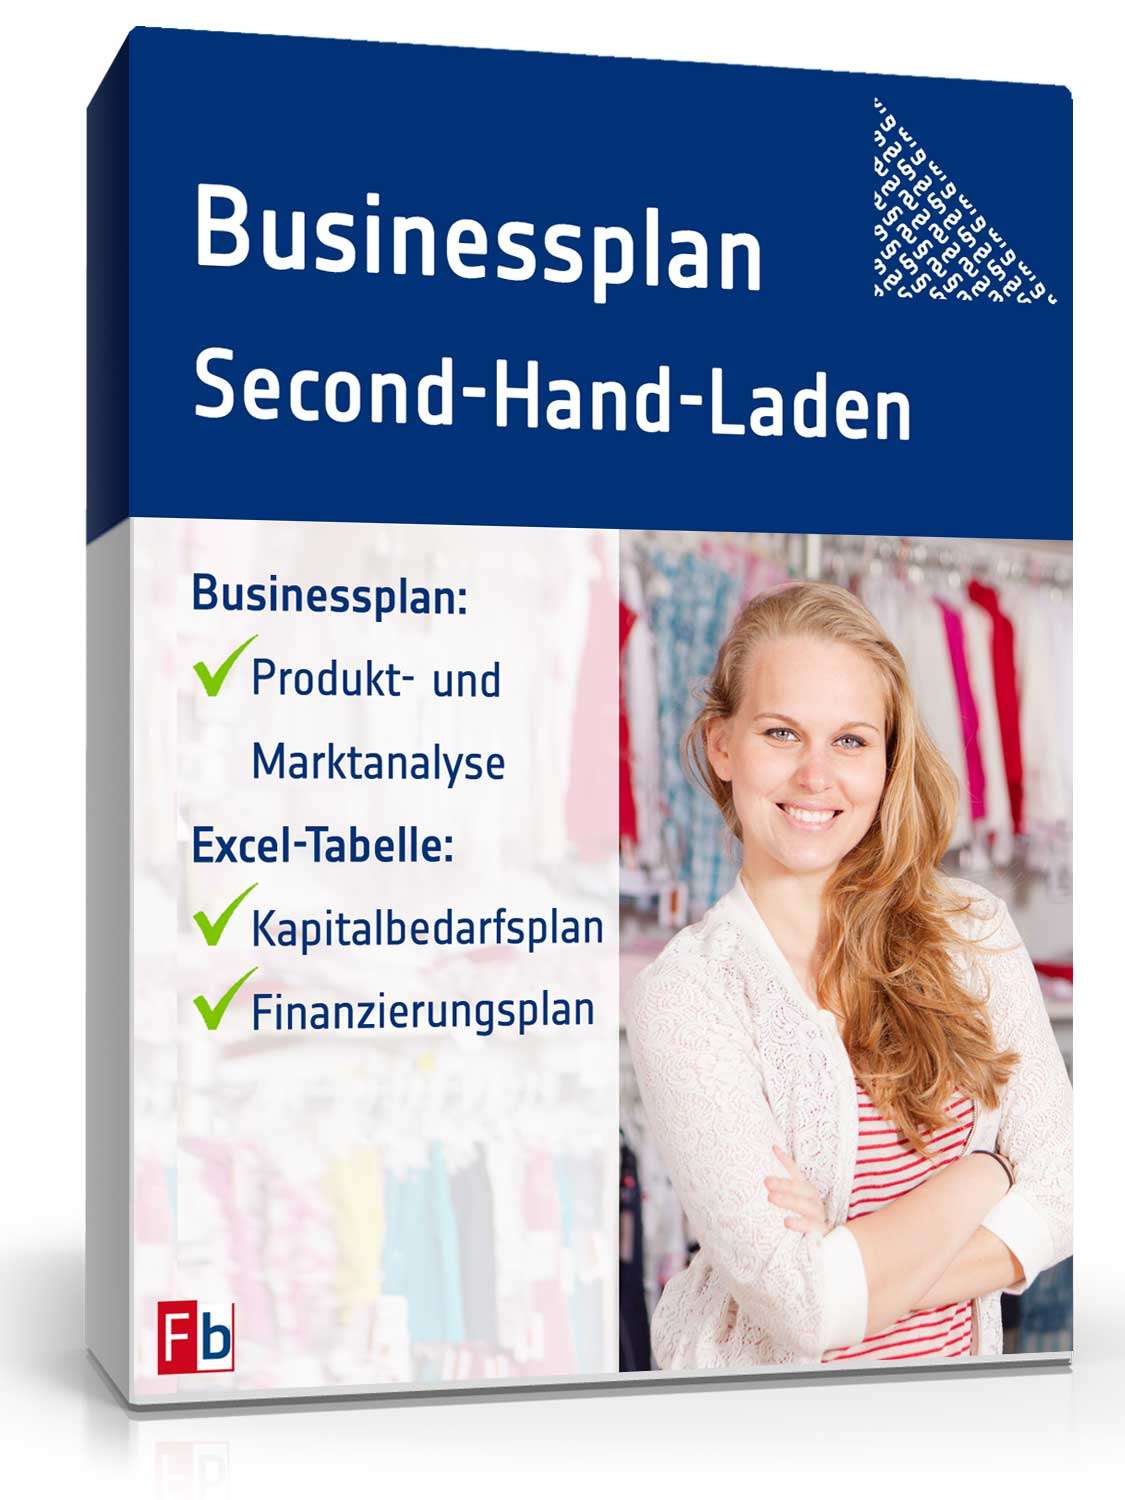 Hauptbild des Produkts: Businessplan Second-Hand-Laden